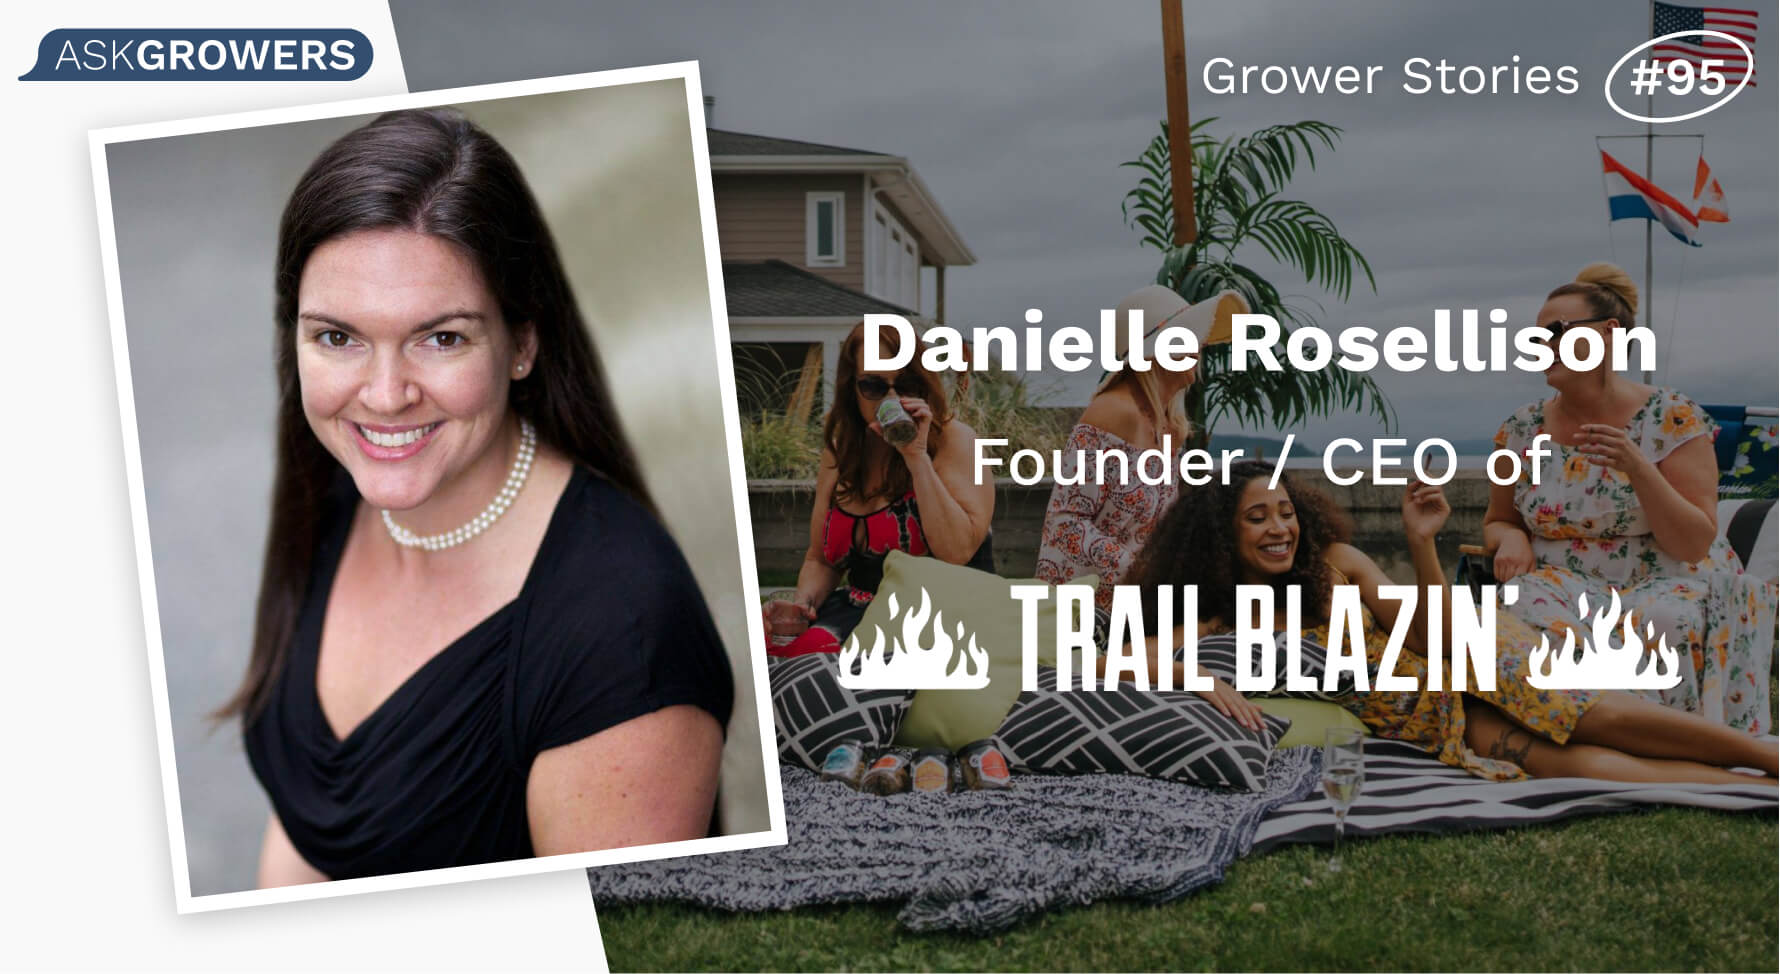 Grower Stories #95: Danielle Rosellison